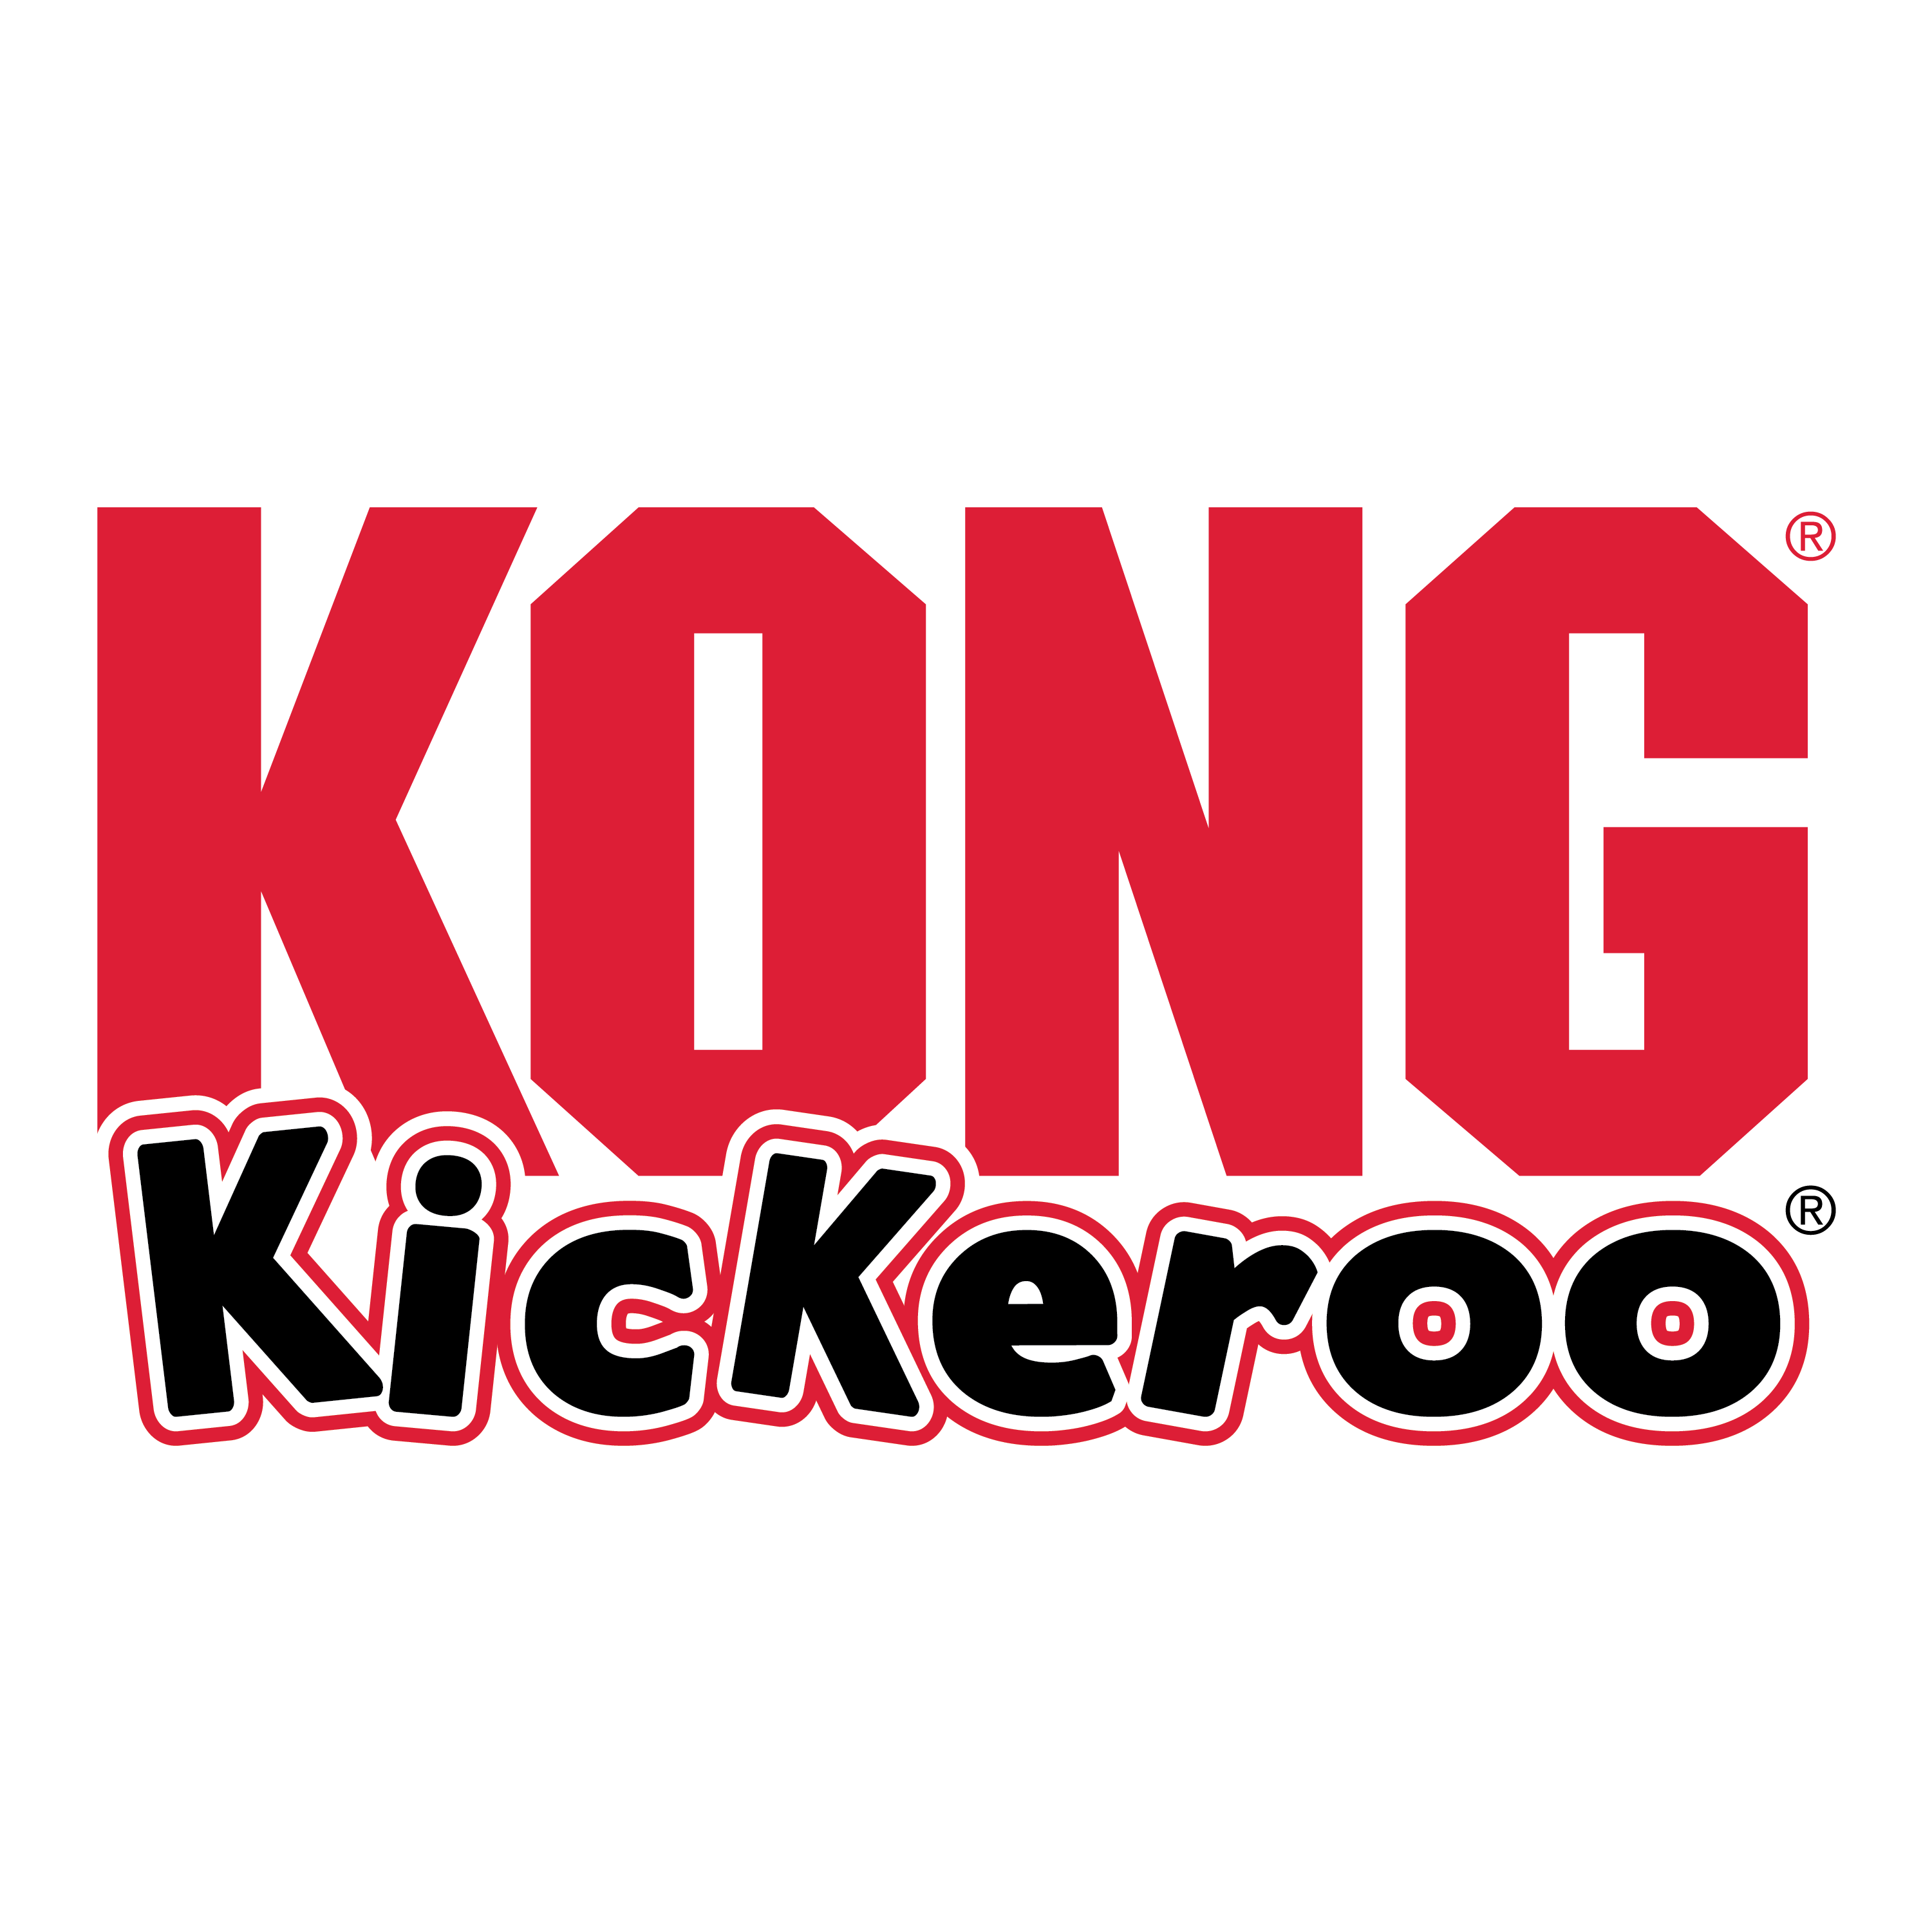 Kickeroo Cozie alt1 product image